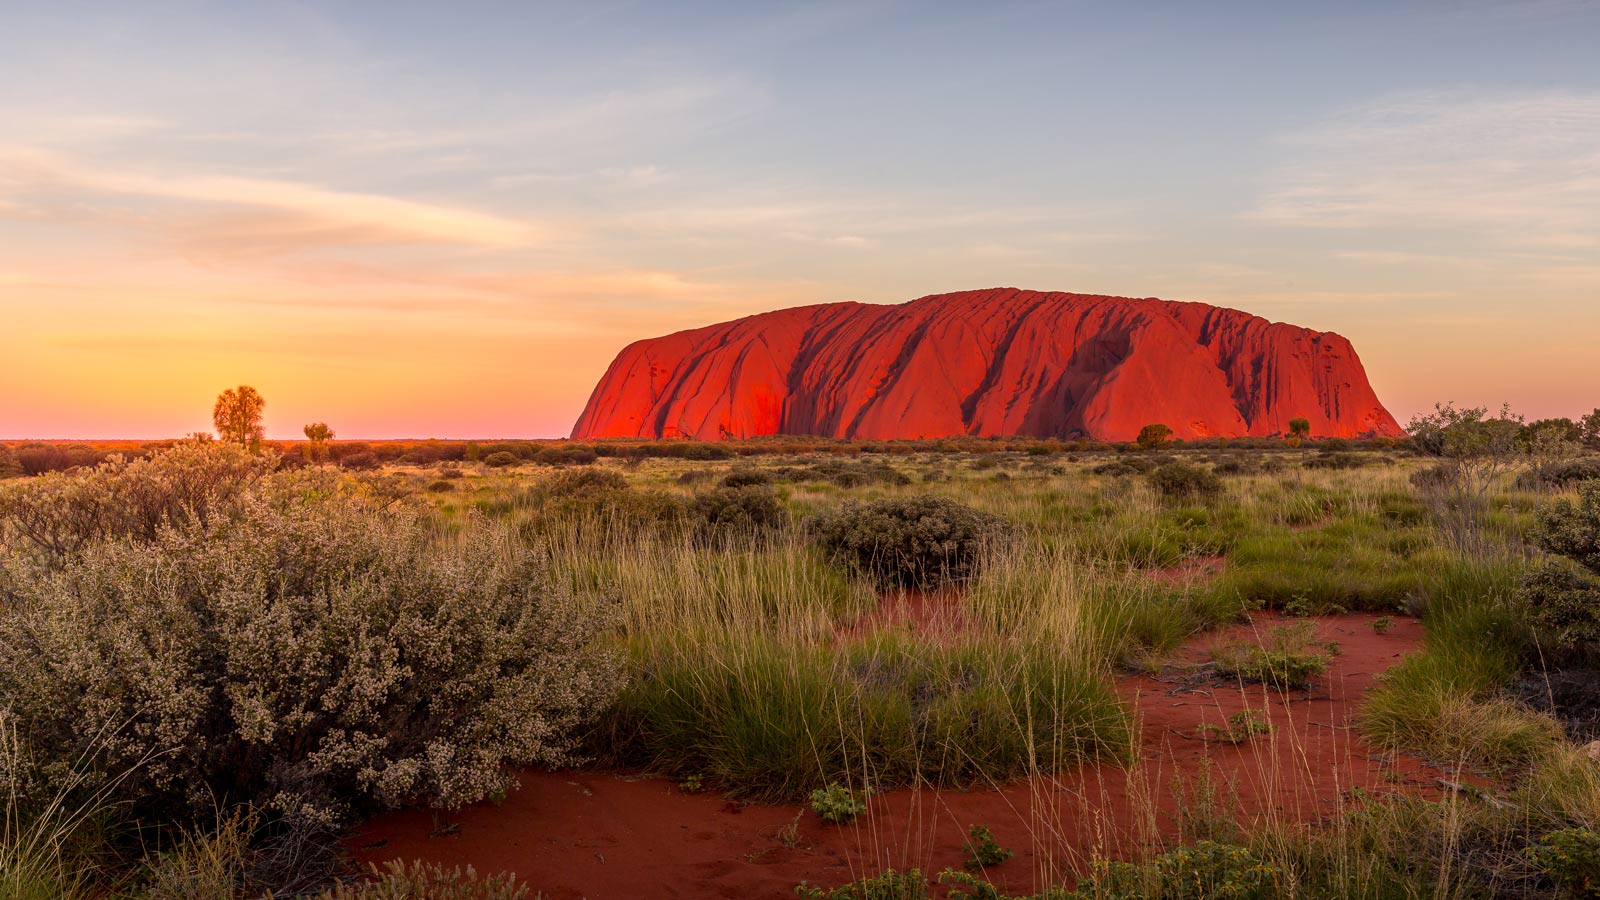 Facts about Uluru in Australia